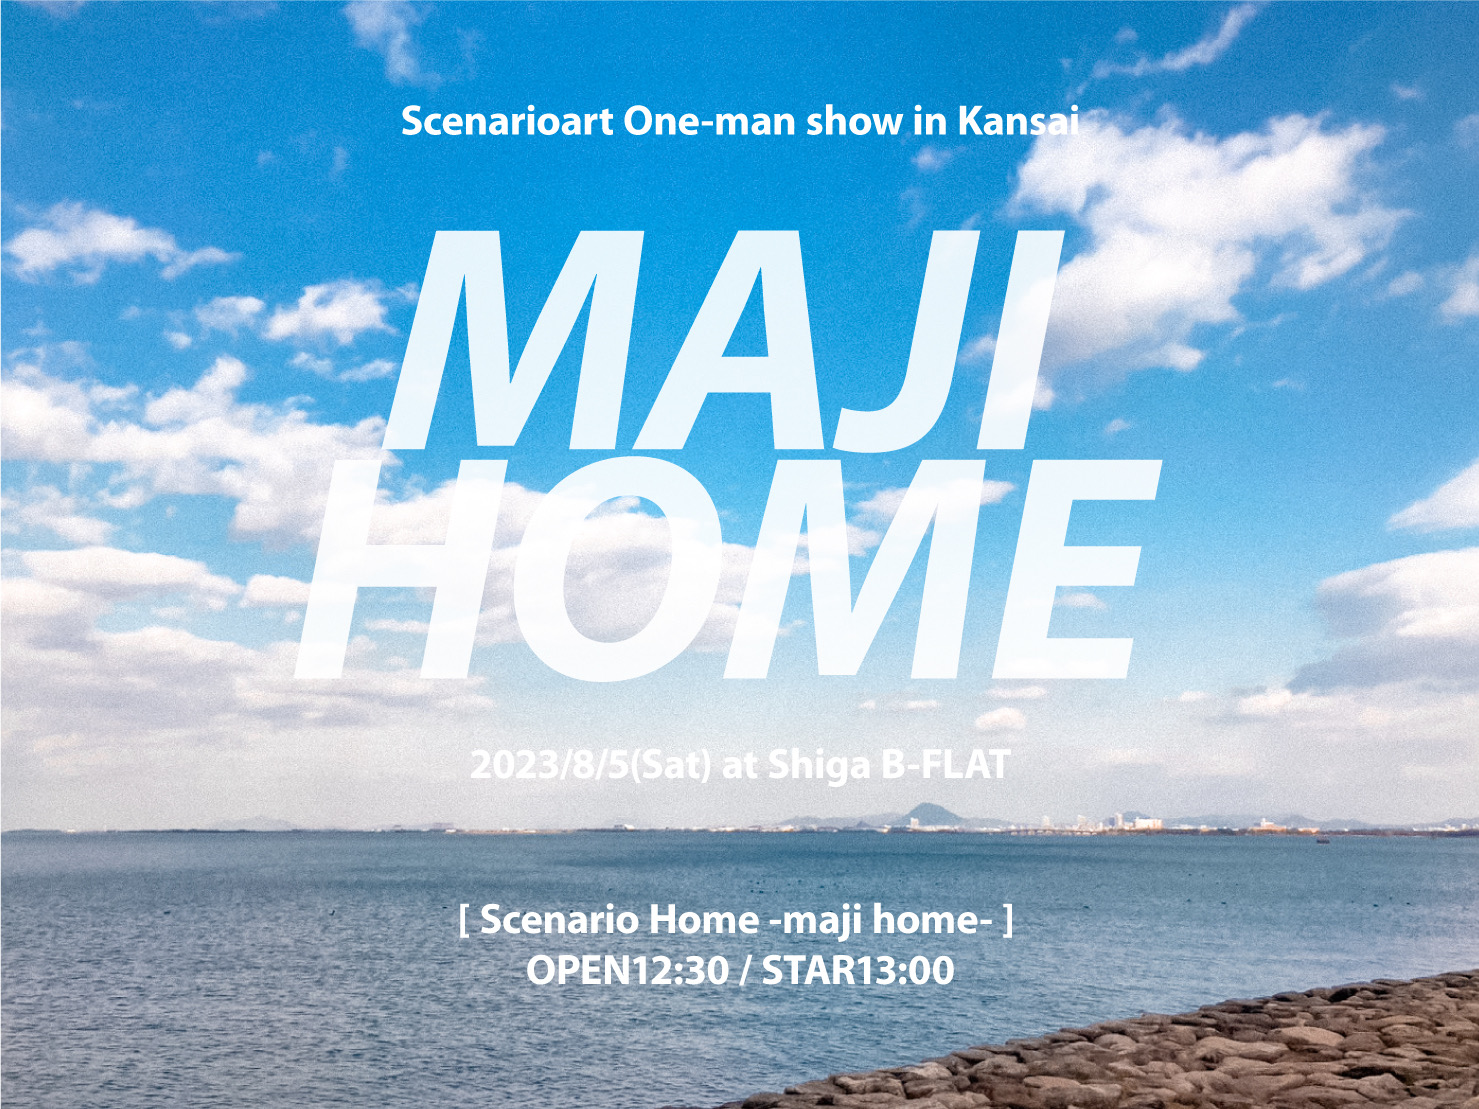 シナリオアート昼公演「Scenario Home -maji home-」